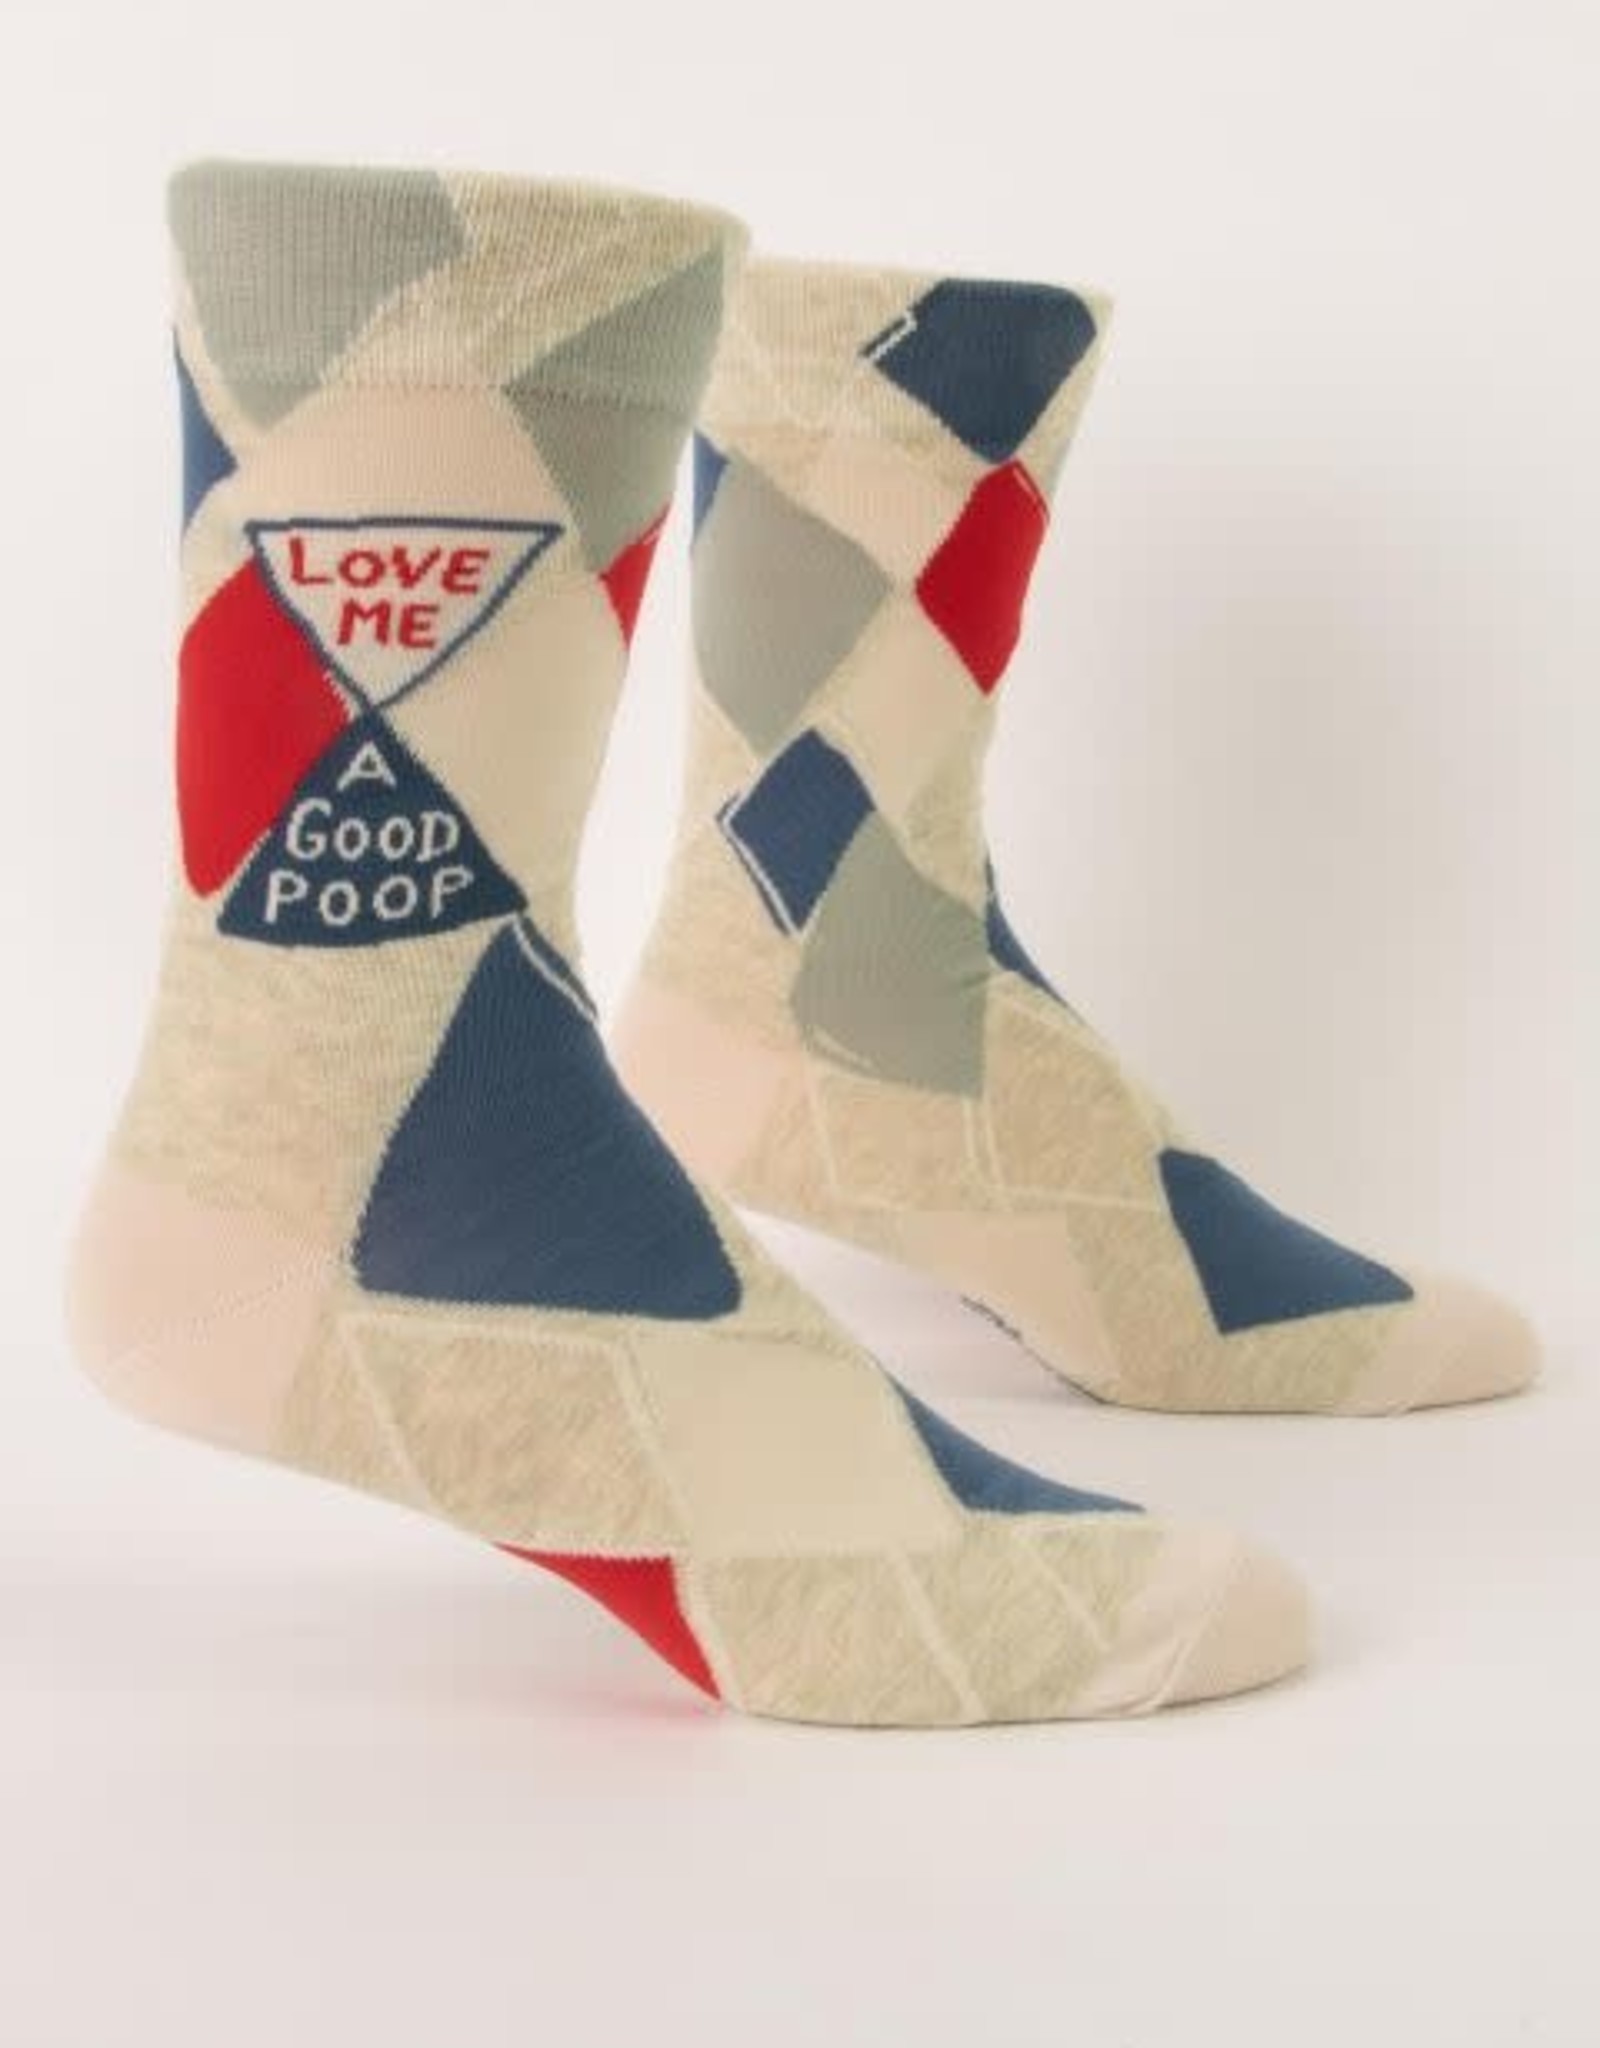 Love Me a Good Poop Men's Socks